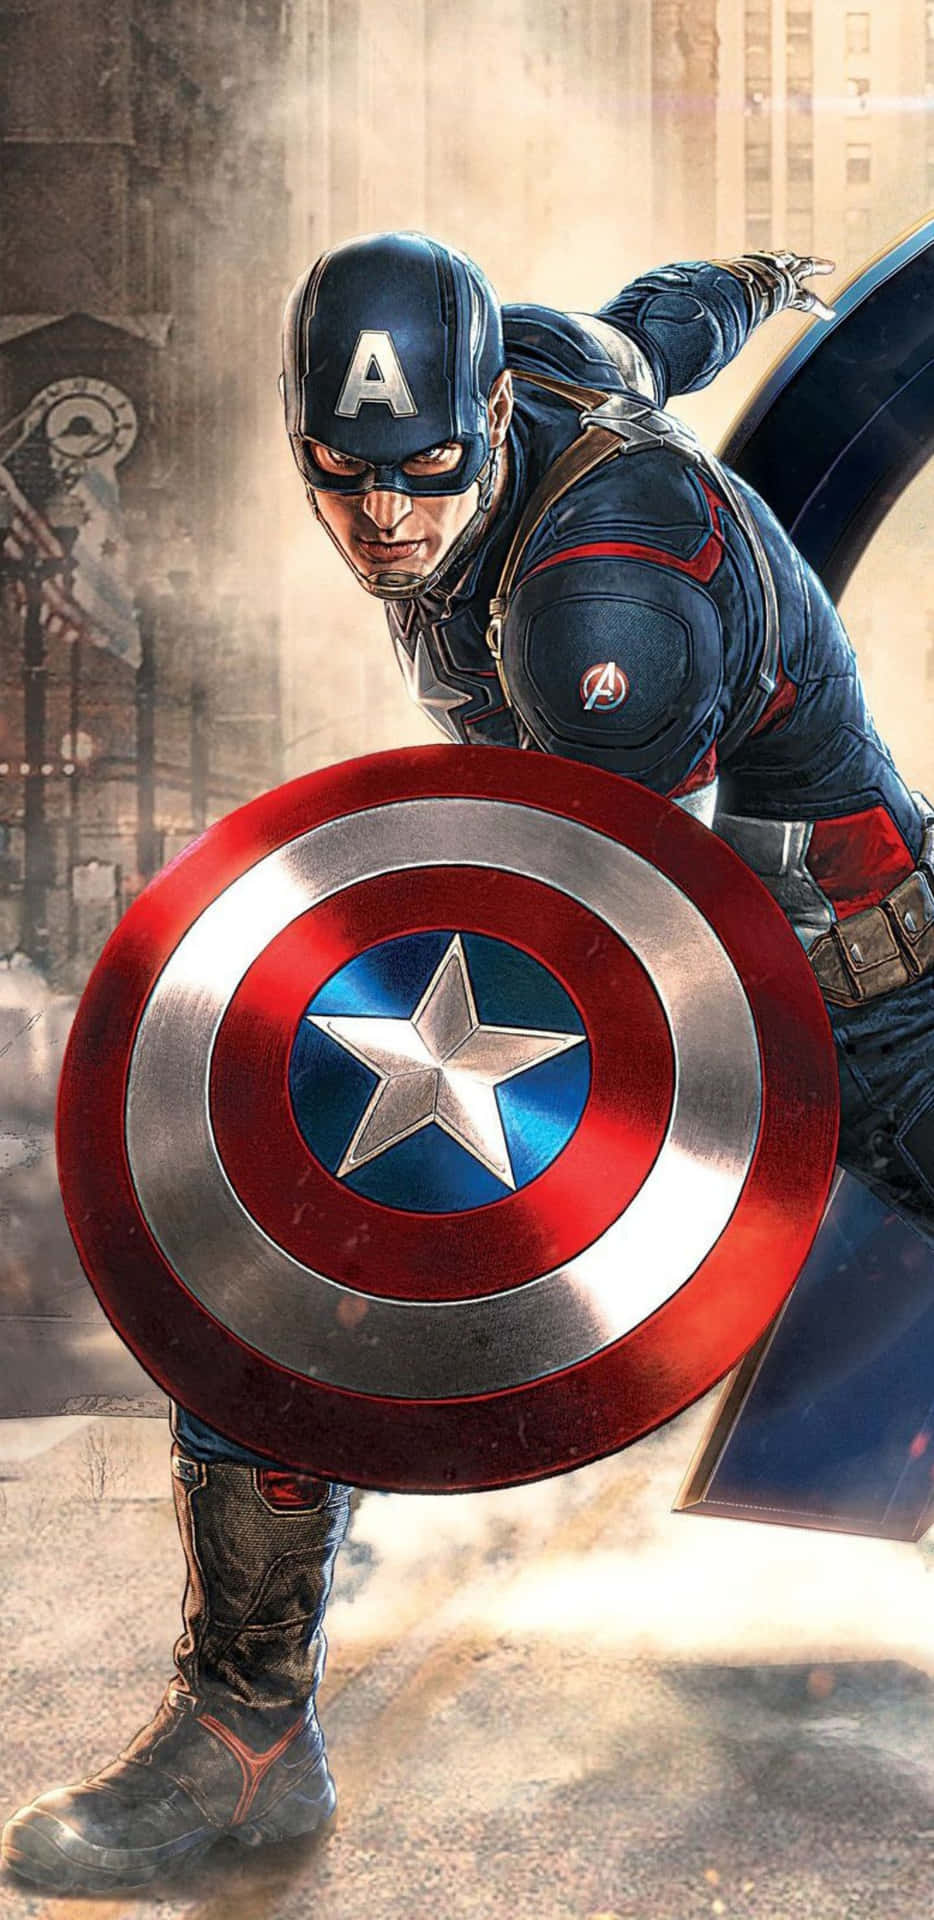 Fondode Pantalla Del Pixel 3 Xl De Capitán América Con Chris Evans.